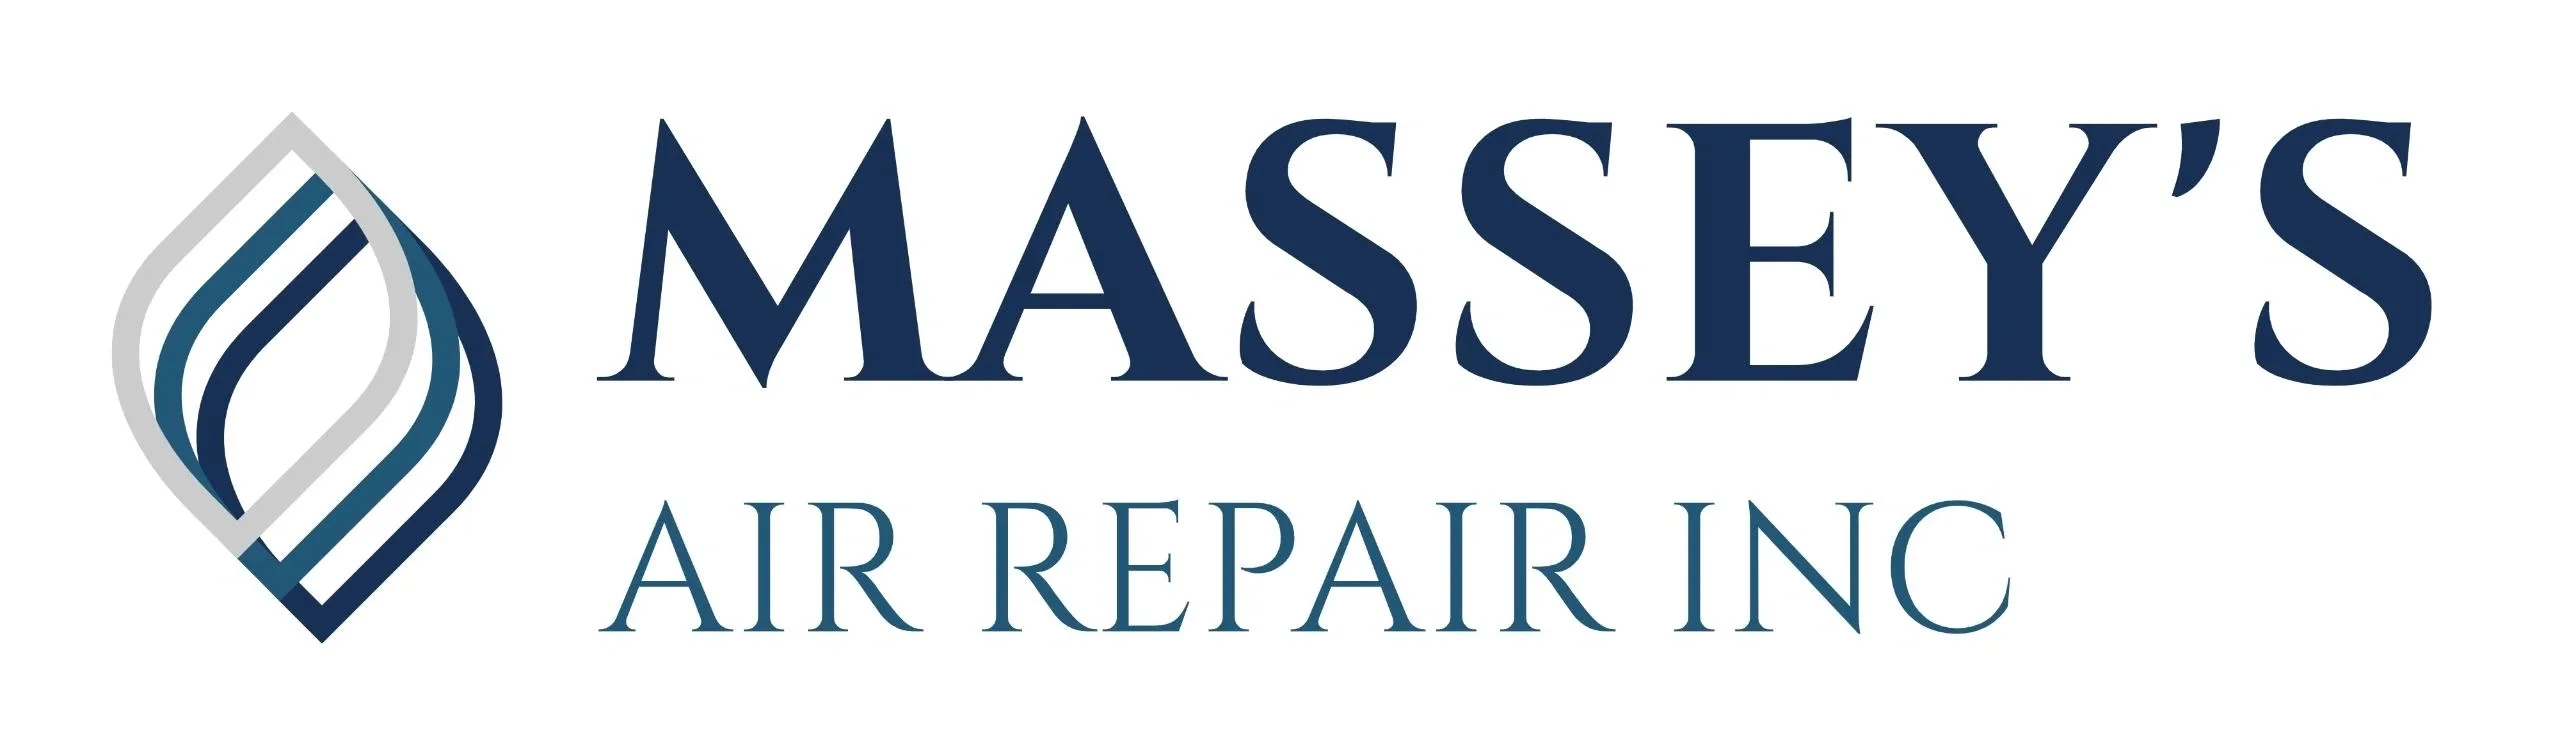 MASSEY'S AIR REPAIR INC Logo